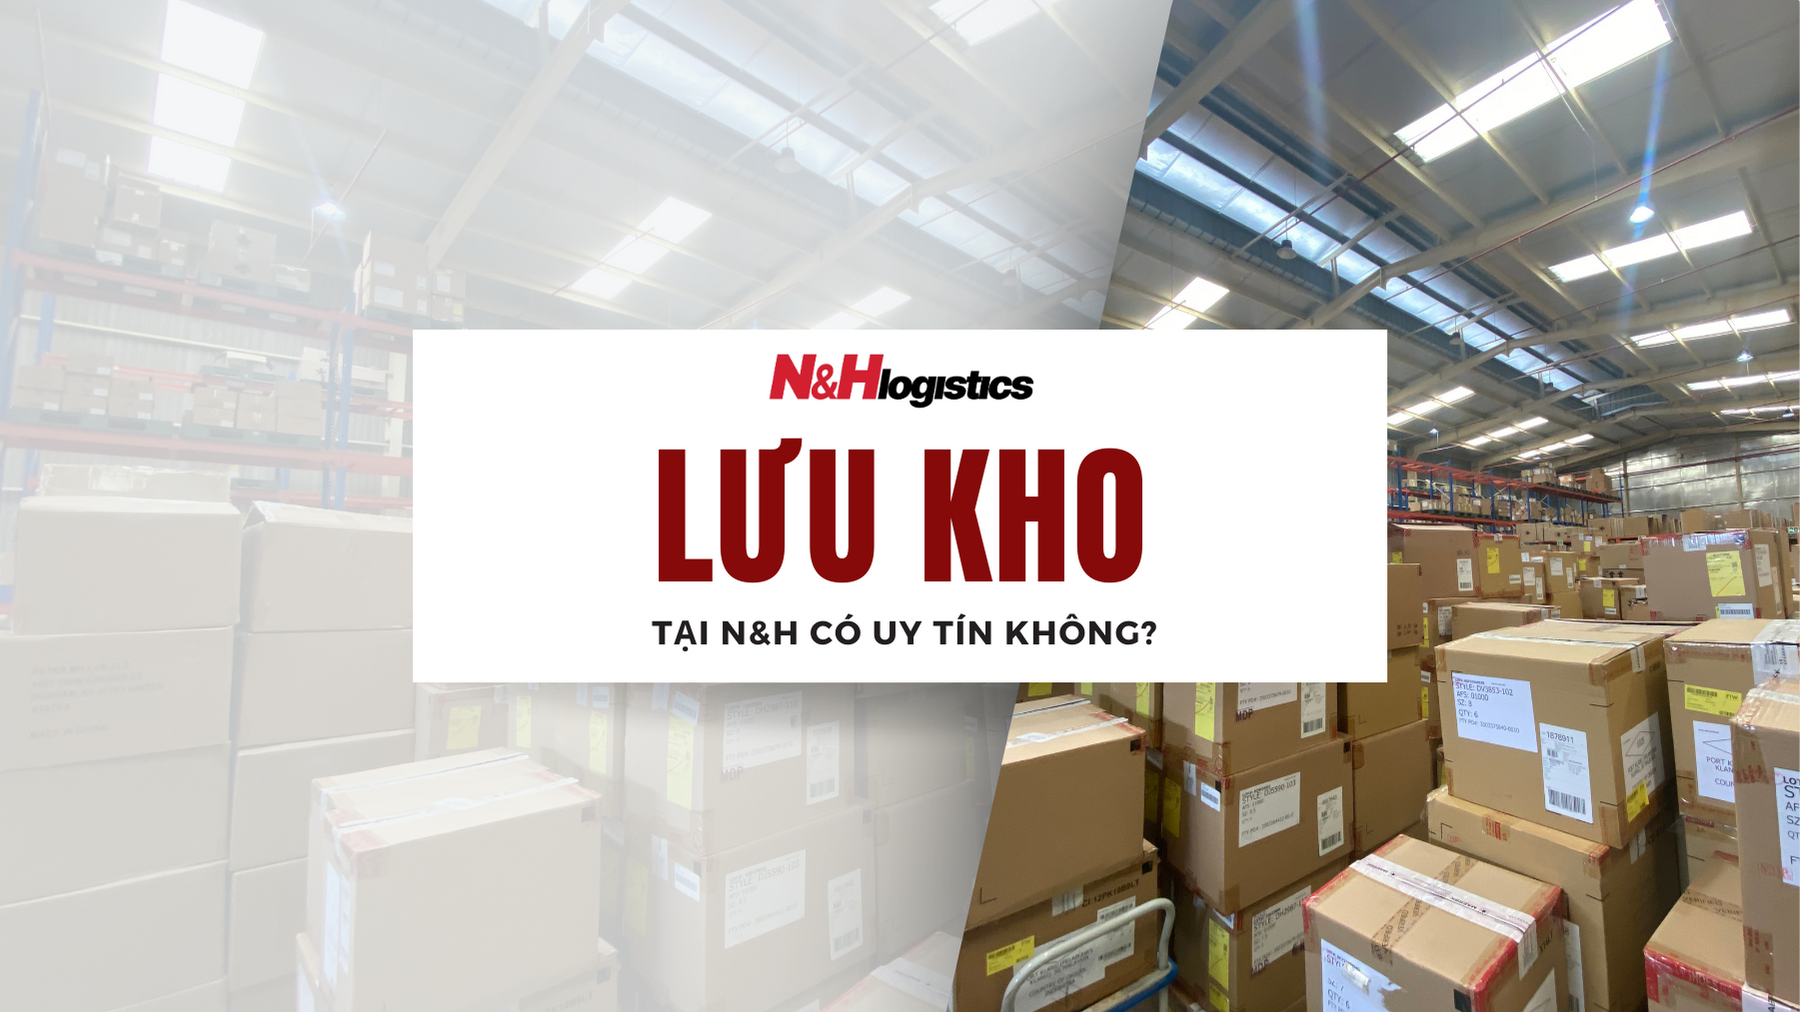 Lưu kho tại N&H Logistics có uy tín không?